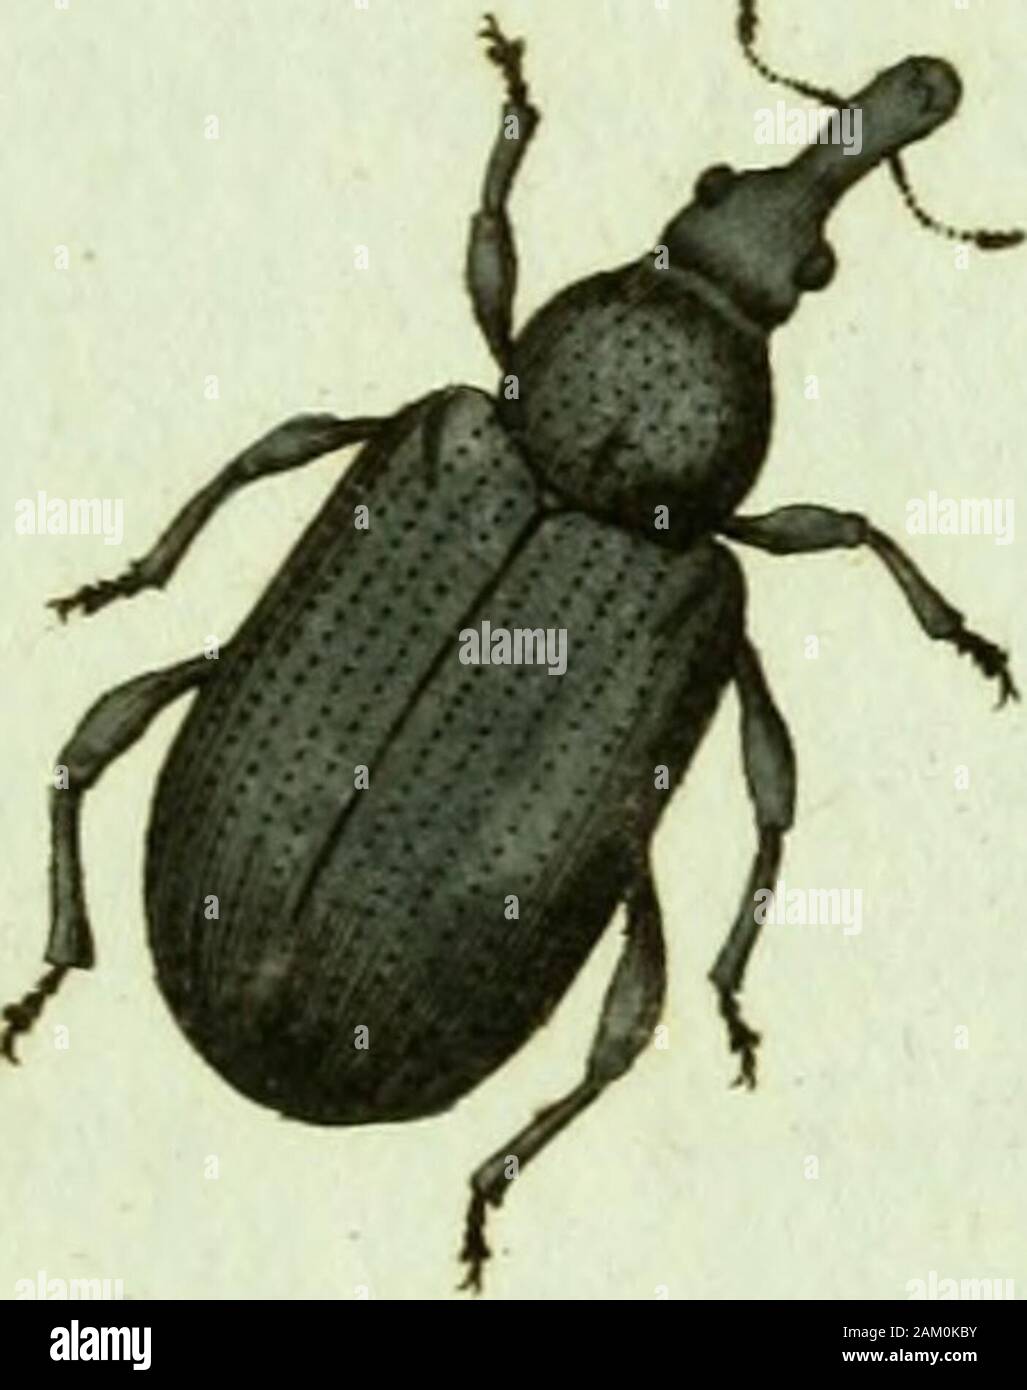 Favnae insectorvm Germanicae initia, oder, Deutschlands Insecten. ^^ Ttteluou frumentärtcw^ czar BEI TEL AB VS frumentarius. Der Korn A/tetrüfselkä/ar.Attelabus/turnentarius: Sanguineus elytris crenato - striatis. Fabtic. Eni, Syst. T.H. n.55. S. 392. Cutculio/tumenturius: Longirostris sanguineus. Fabtic. Syst. Ent. n. Ich 5. s. 608. Spec. Isoliertes T. I. n. 49. S. 16 g. Mant. Isoliertes T. I. n. 65. S. 102. Curculio/tumentatlus. Linn. Syst. Nat. n. Ich 5. s. 608. ed. XIII. n. i3, S.1745. Fn. Suec n. 586. Handeln. Stockholm. ij5o. S. 186. n. uAct. Nidros. Iii s. 391. Leeuwenhocck.arc. Nat. Der. 168. augm. 6. s. 83 Stockfoto